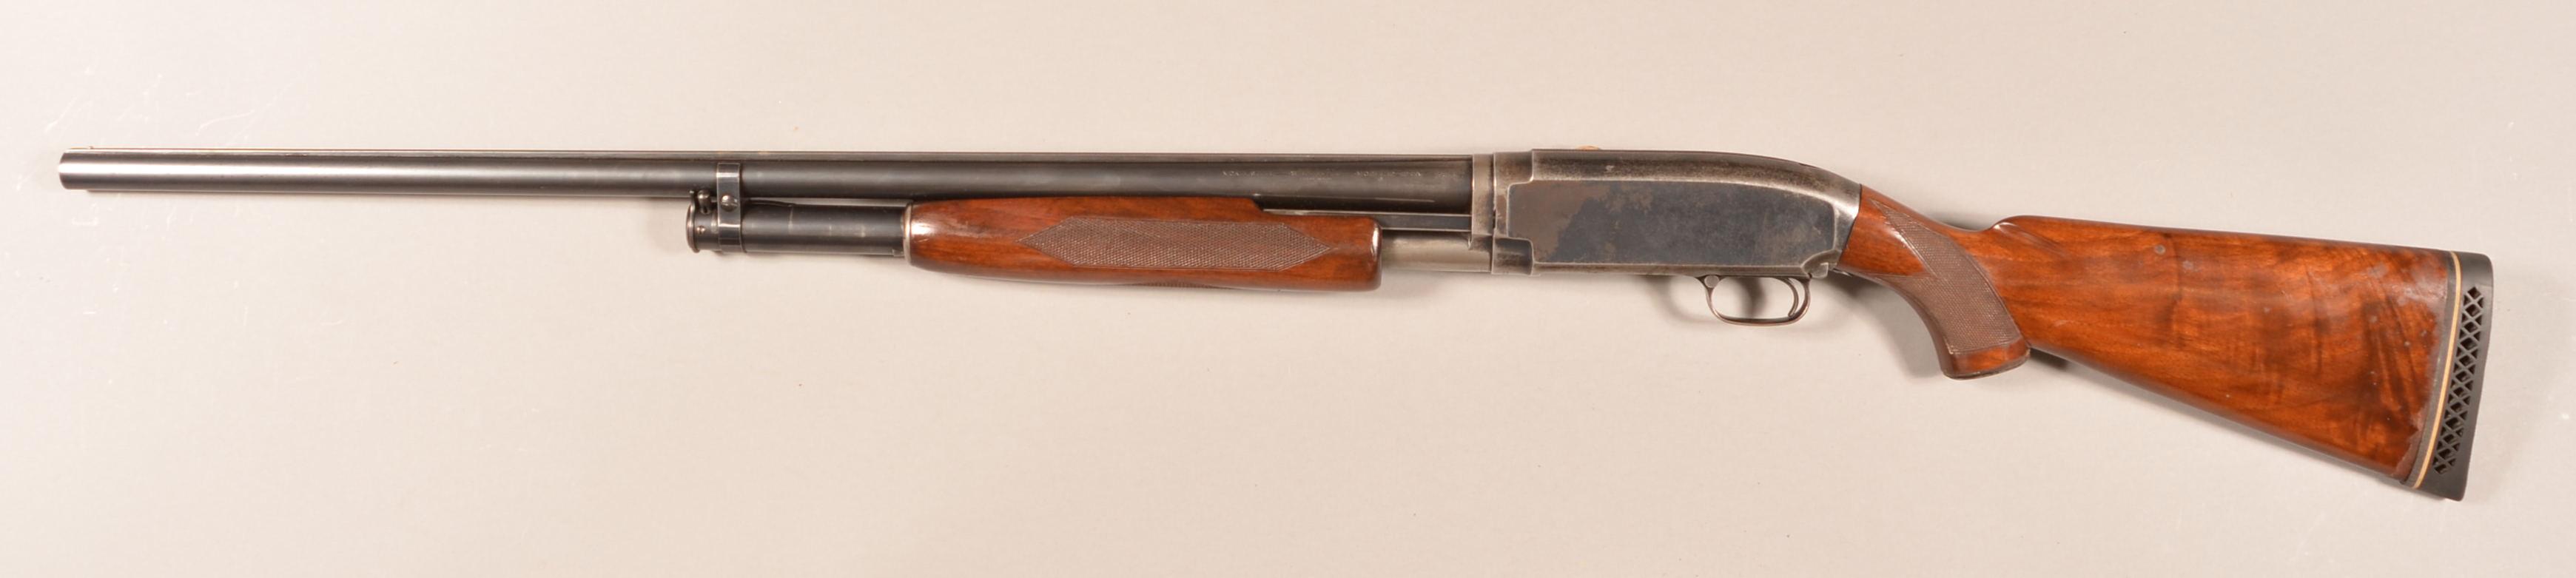 Winchester mod. 12 12ga Shotgun